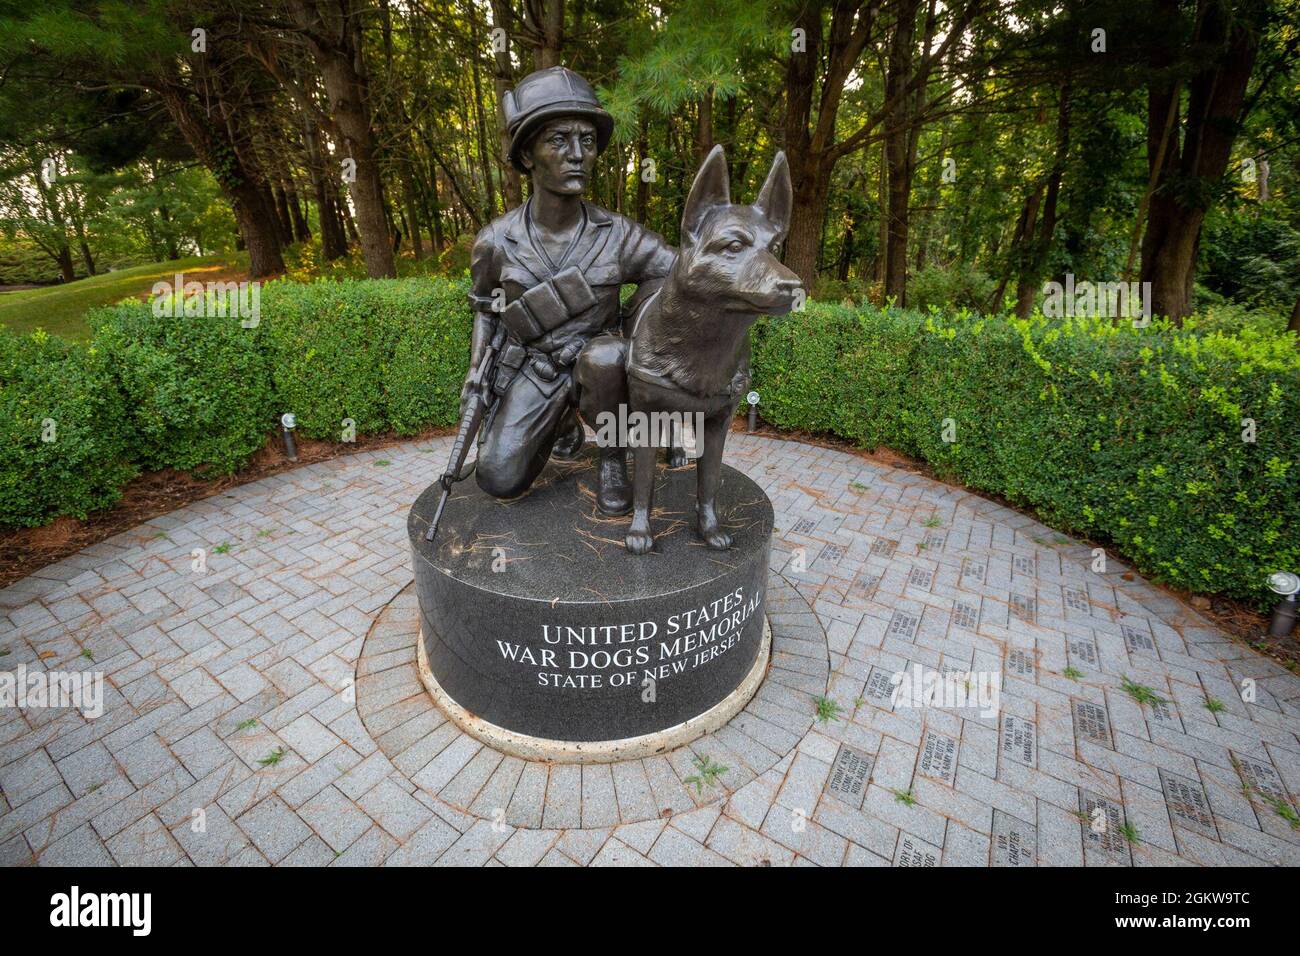 Le US War Dogs Memorial au New Jersey Vietnam Veterans’ Memorial à Holmdel, N.J., 7 juillet 2021. Il a été conçu par le sculpteur Bruce Lindsay et a été dédié le 10 juin 2006. Le New Jersey Vietnam Veterans’ Memorial, un pavillon circulaire en plein air mesurant 200 pieds de diamètre, a été conçu par Hien Nguyen, qui est venu aux États-Unis depuis le Vietnam en 1975. Il est composé de 366 panneaux de granit noir de huit pieds de hauteur, chacun représentant un jour de l'année. Les victimes sont inscrites sur les panneaux de granit le jour où elles ont été tuées. Le septième panel de mai, le jour de la fin de la guerre, est orienté vers V. Banque D'Images